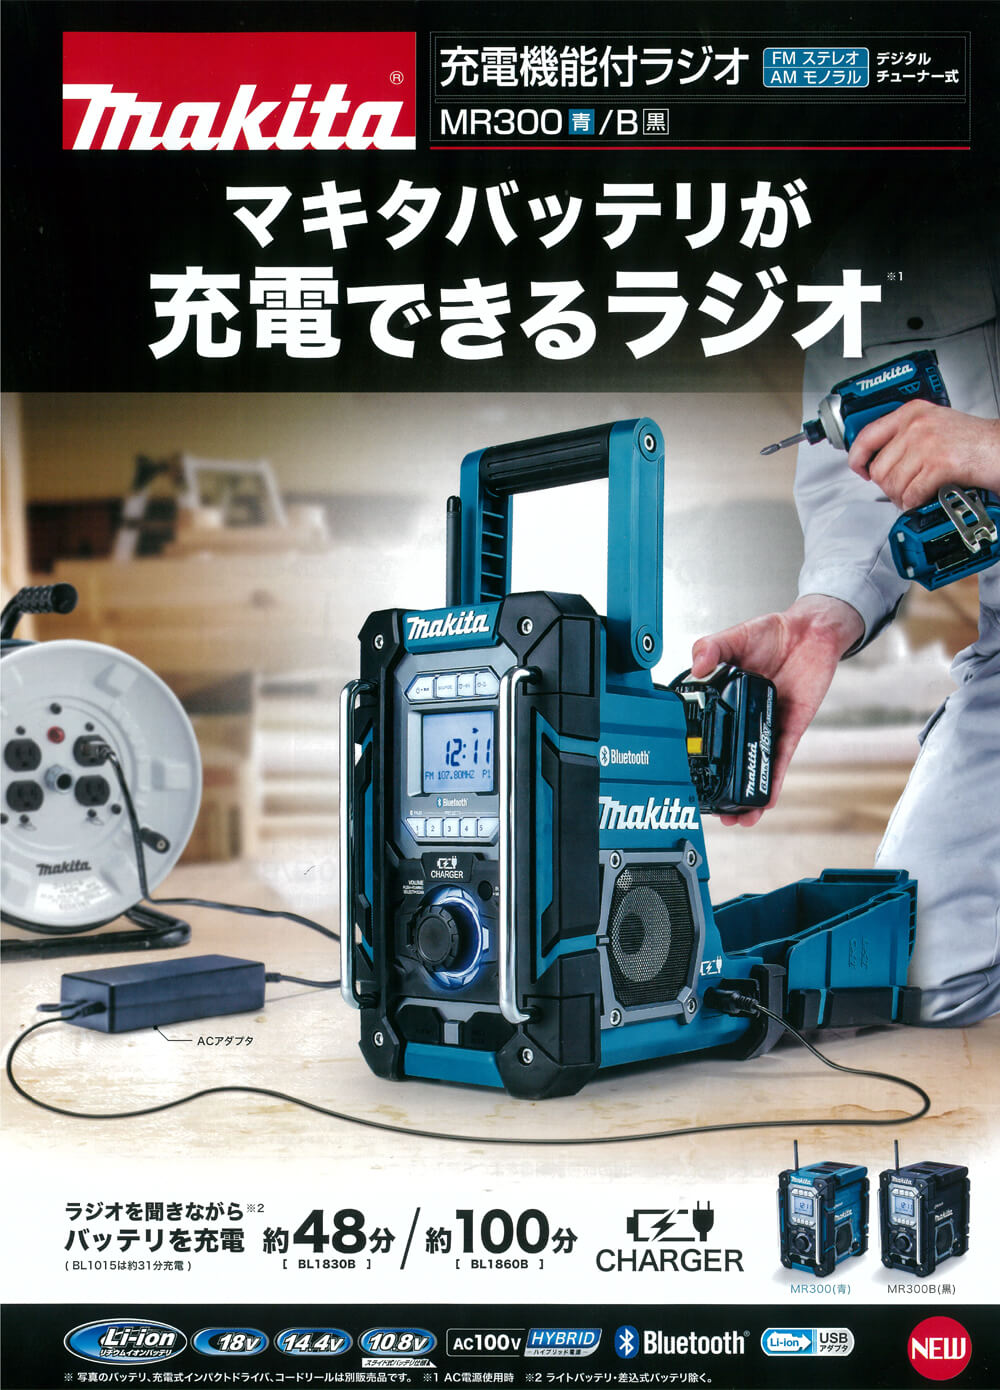 マキタ MR300 充電機能付ラジオを【徹底解説】